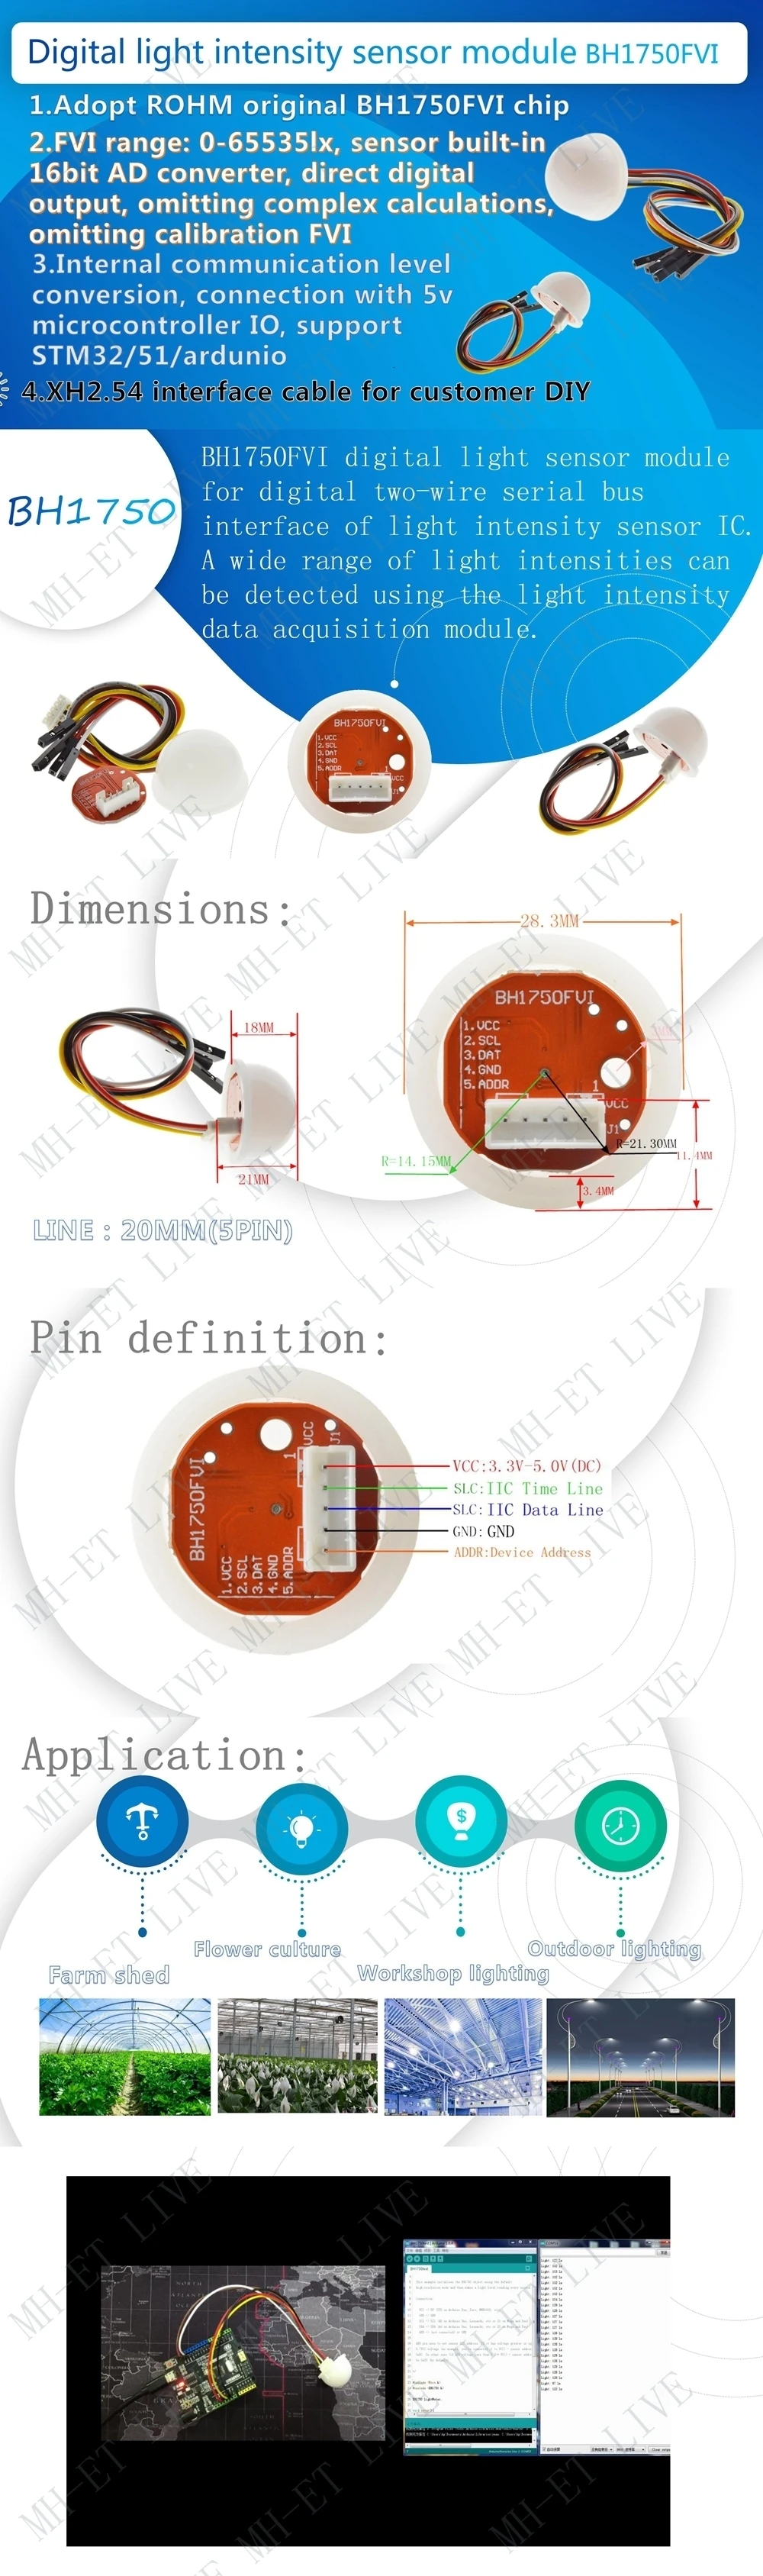 ShengYang интеллектуальный электронный BH1750 BH1750FVI чип светильник интенсивность светильник Модуль светильник шар для Arduino